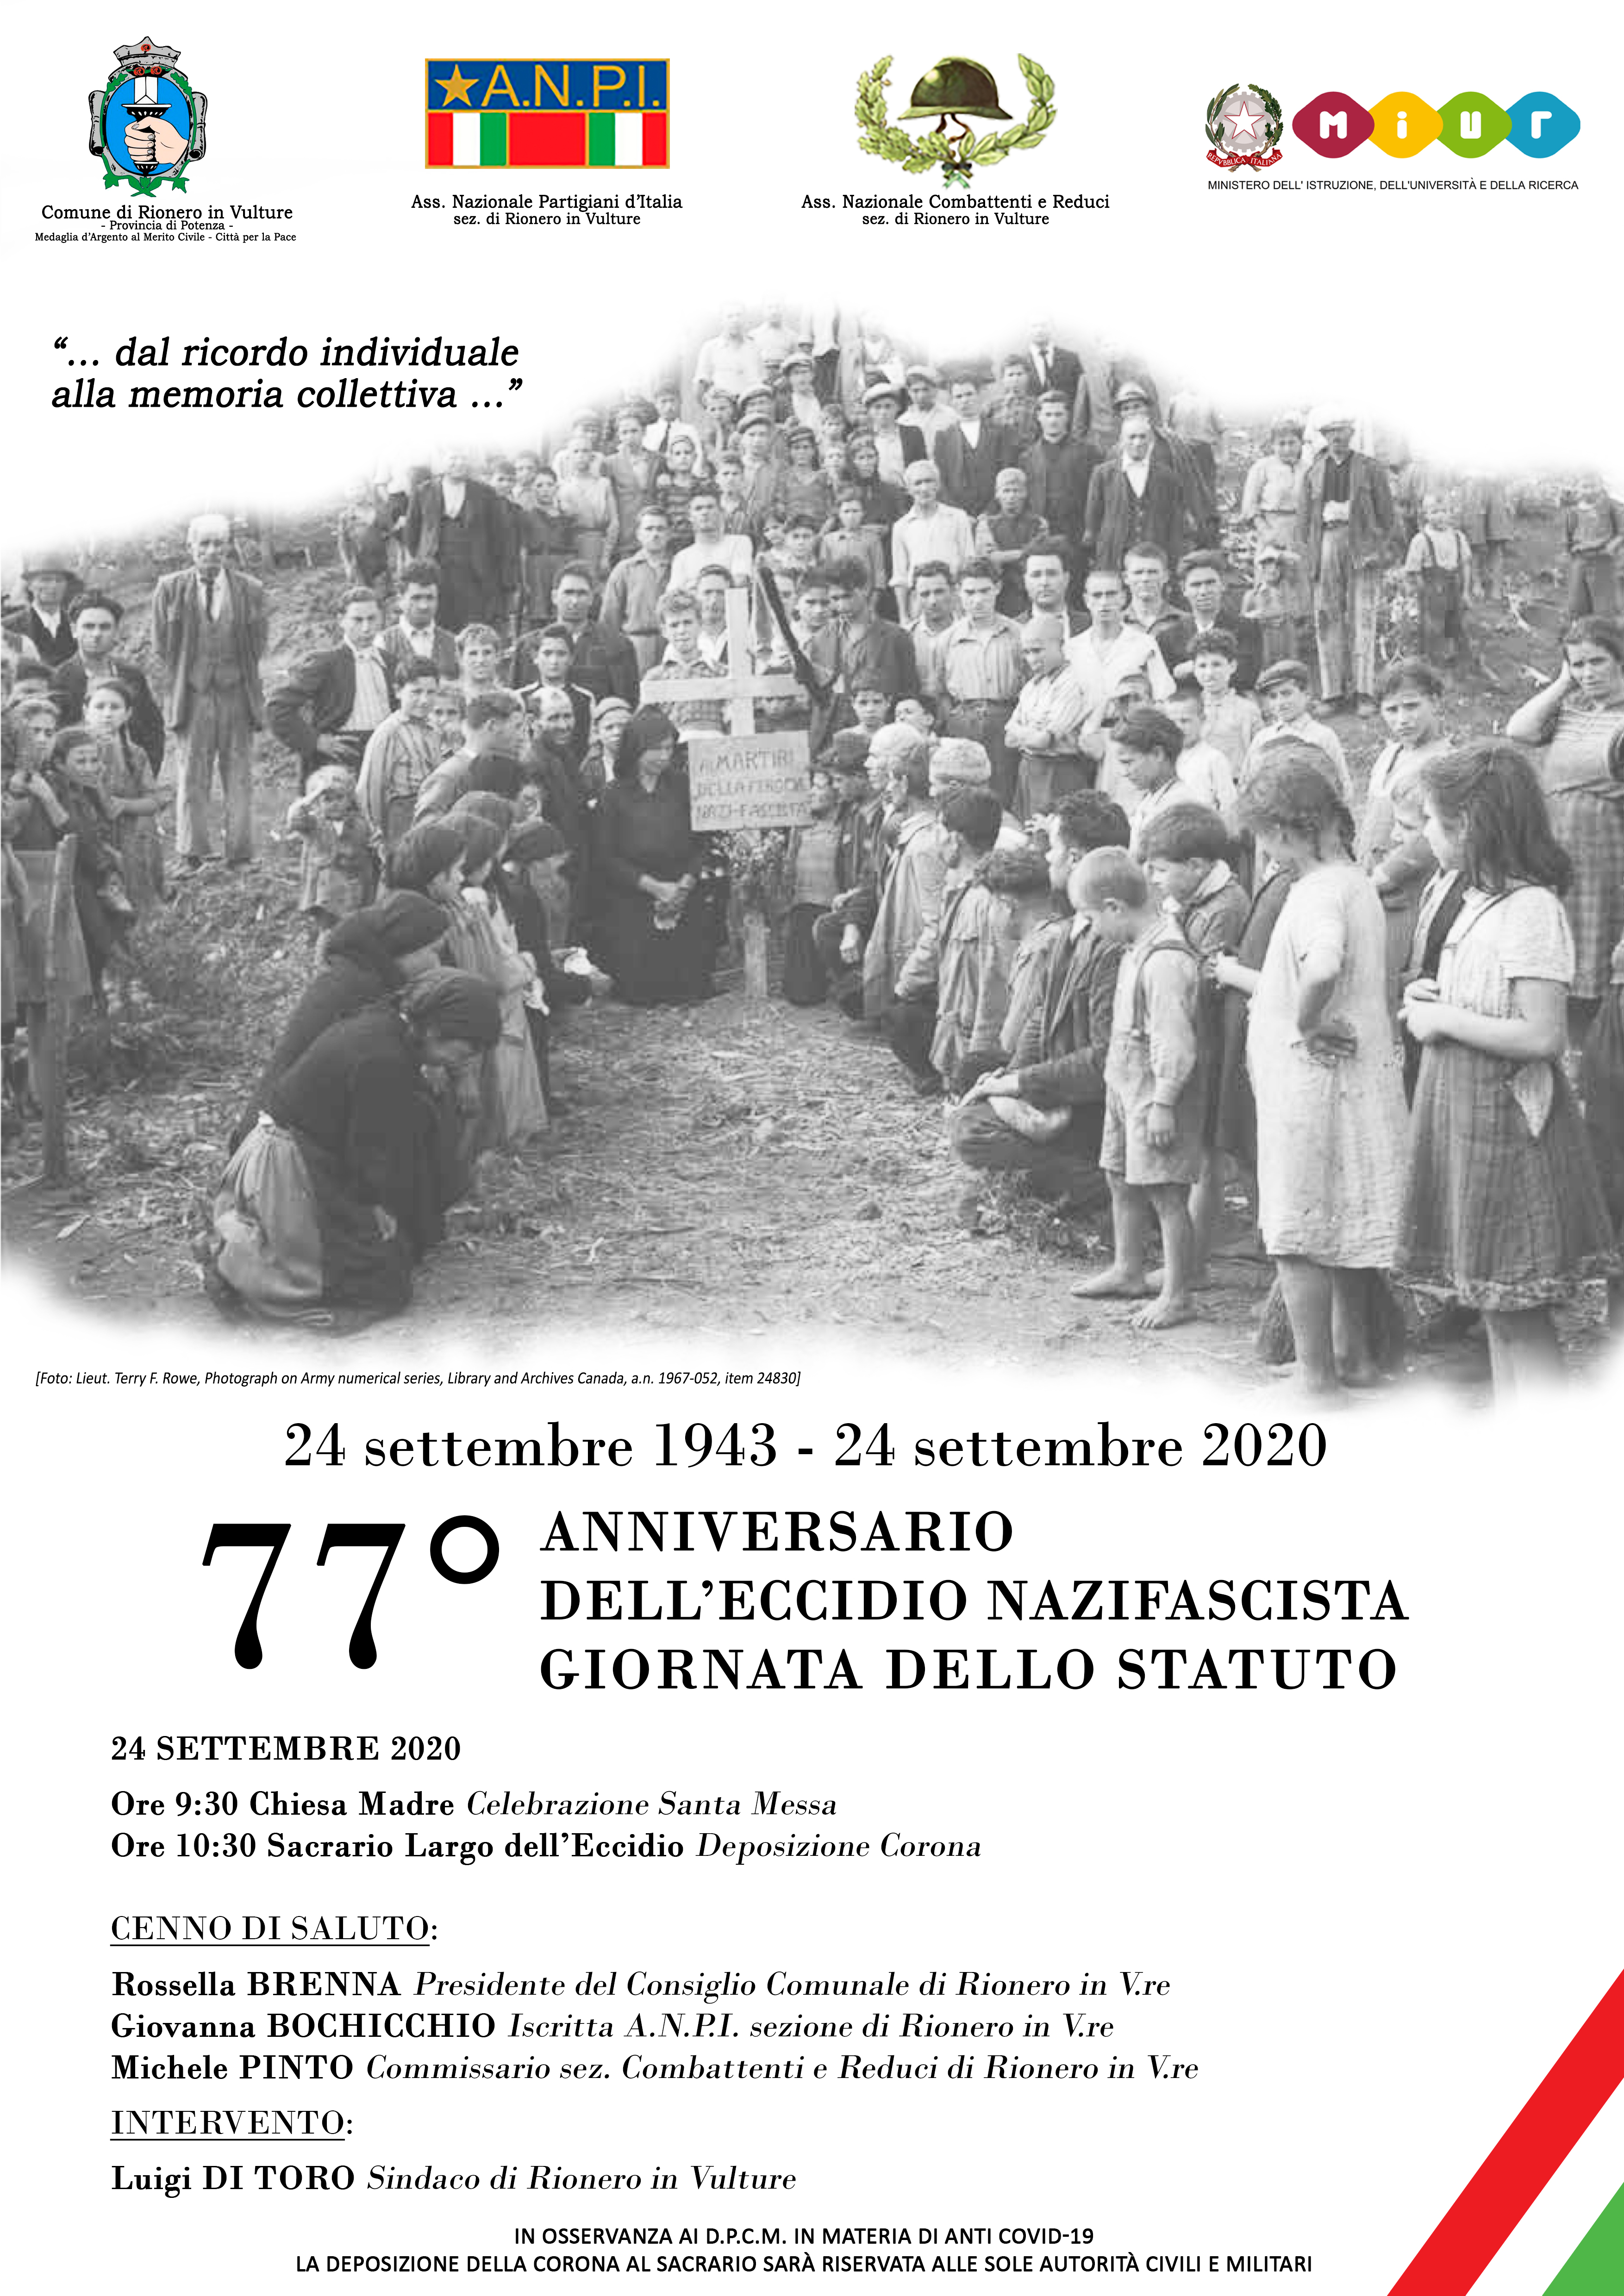 77° Anniversario dell'eccidio nazifascista - Giornata dello Statuto